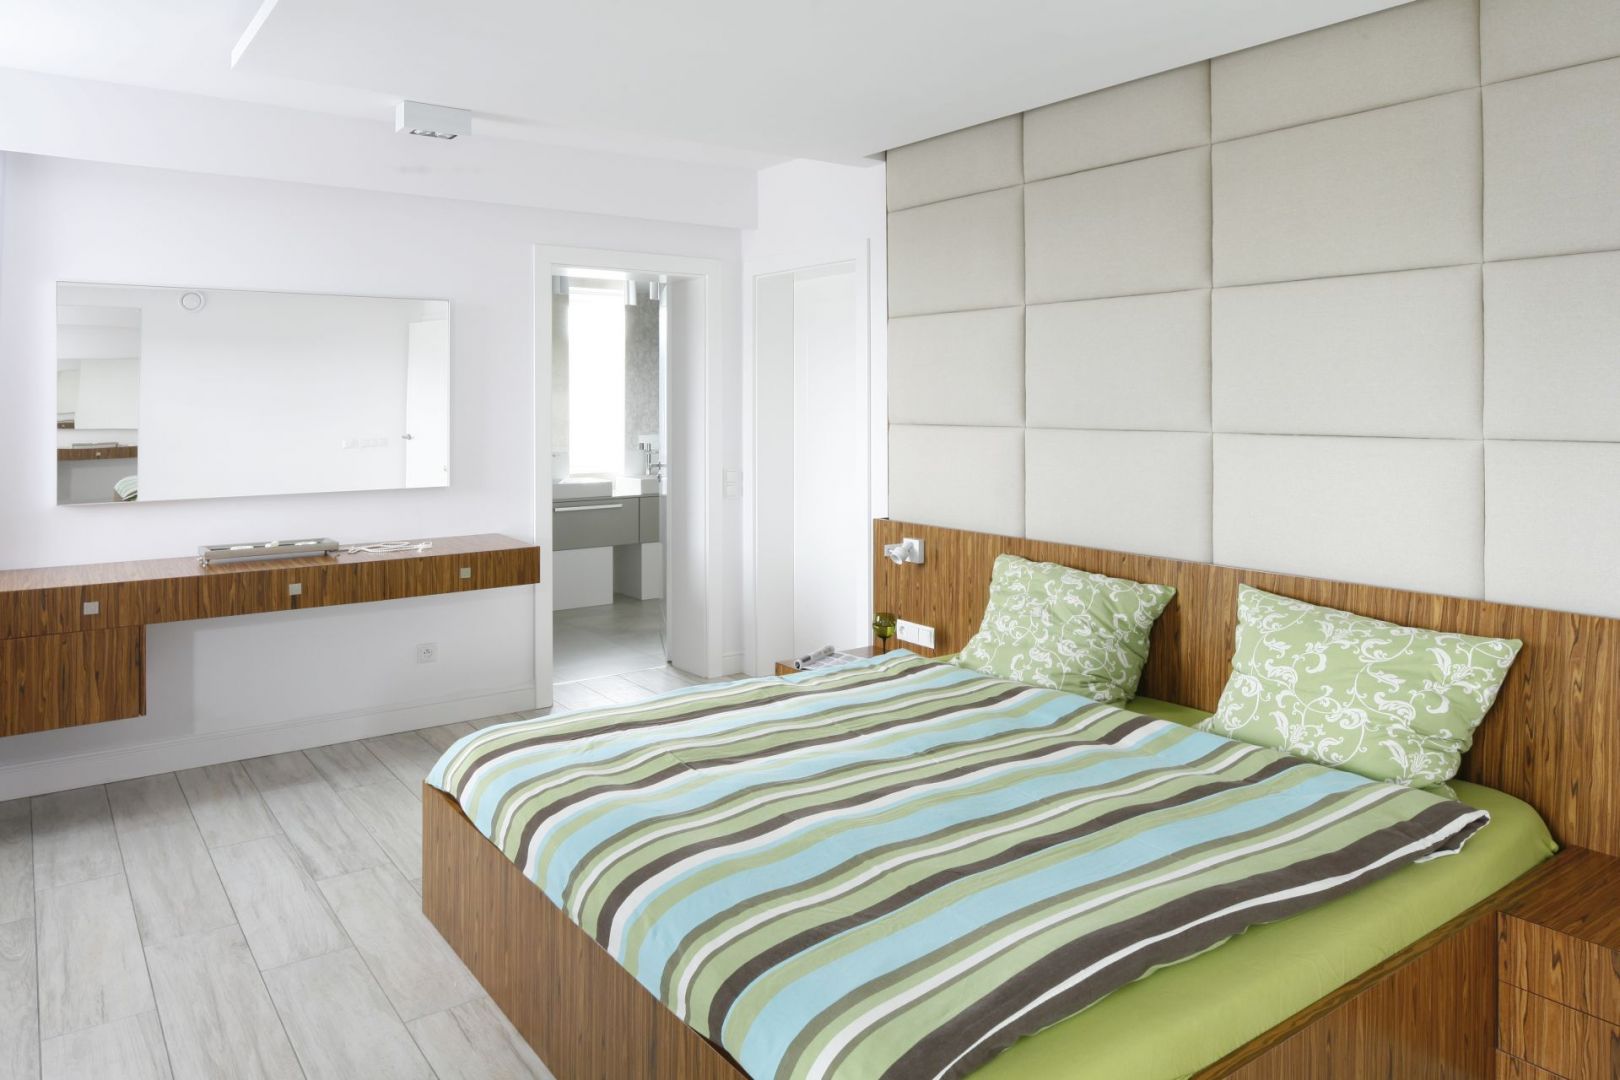 Ściana za łóżkiem wykończona miekkimi panelami sprawi że sypialnia stanie się przytulna. Projekt: Dominik Respondek. Fot. Bartosz Jarosz 